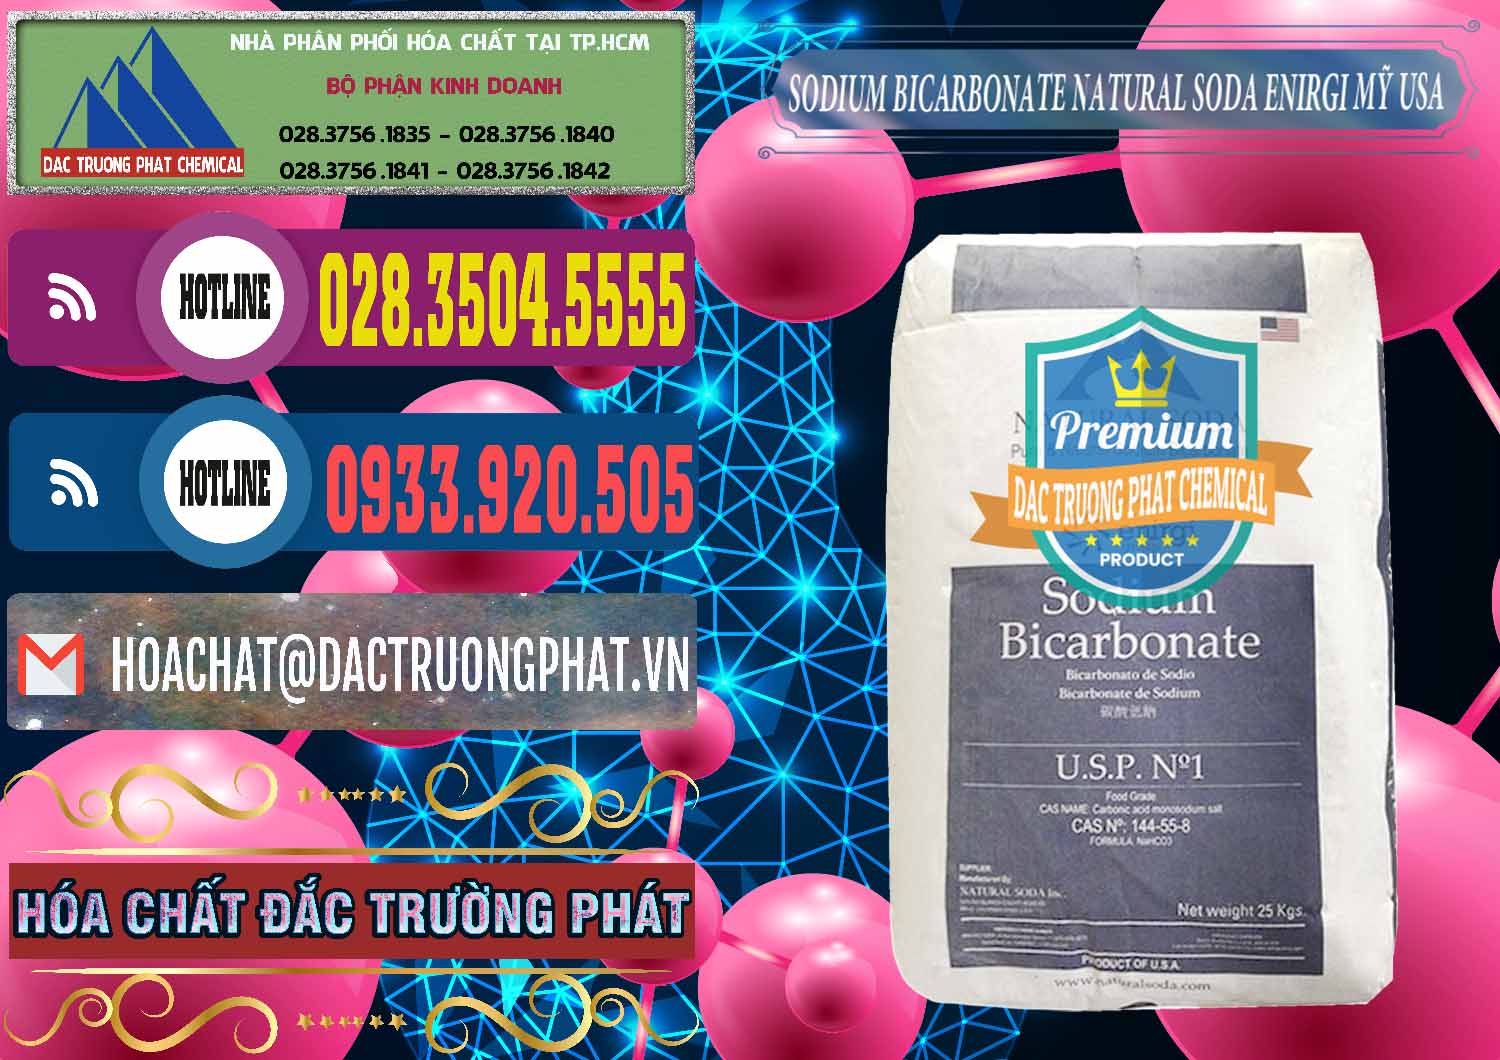 Nơi cung ứng & bán Sodium Bicarbonate – Bicar NaHCO3 Food Grade Natural Soda Enirgi Mỹ USA - 0257 - Chuyên phân phối và cung cấp hóa chất tại TP.HCM - muabanhoachat.com.vn